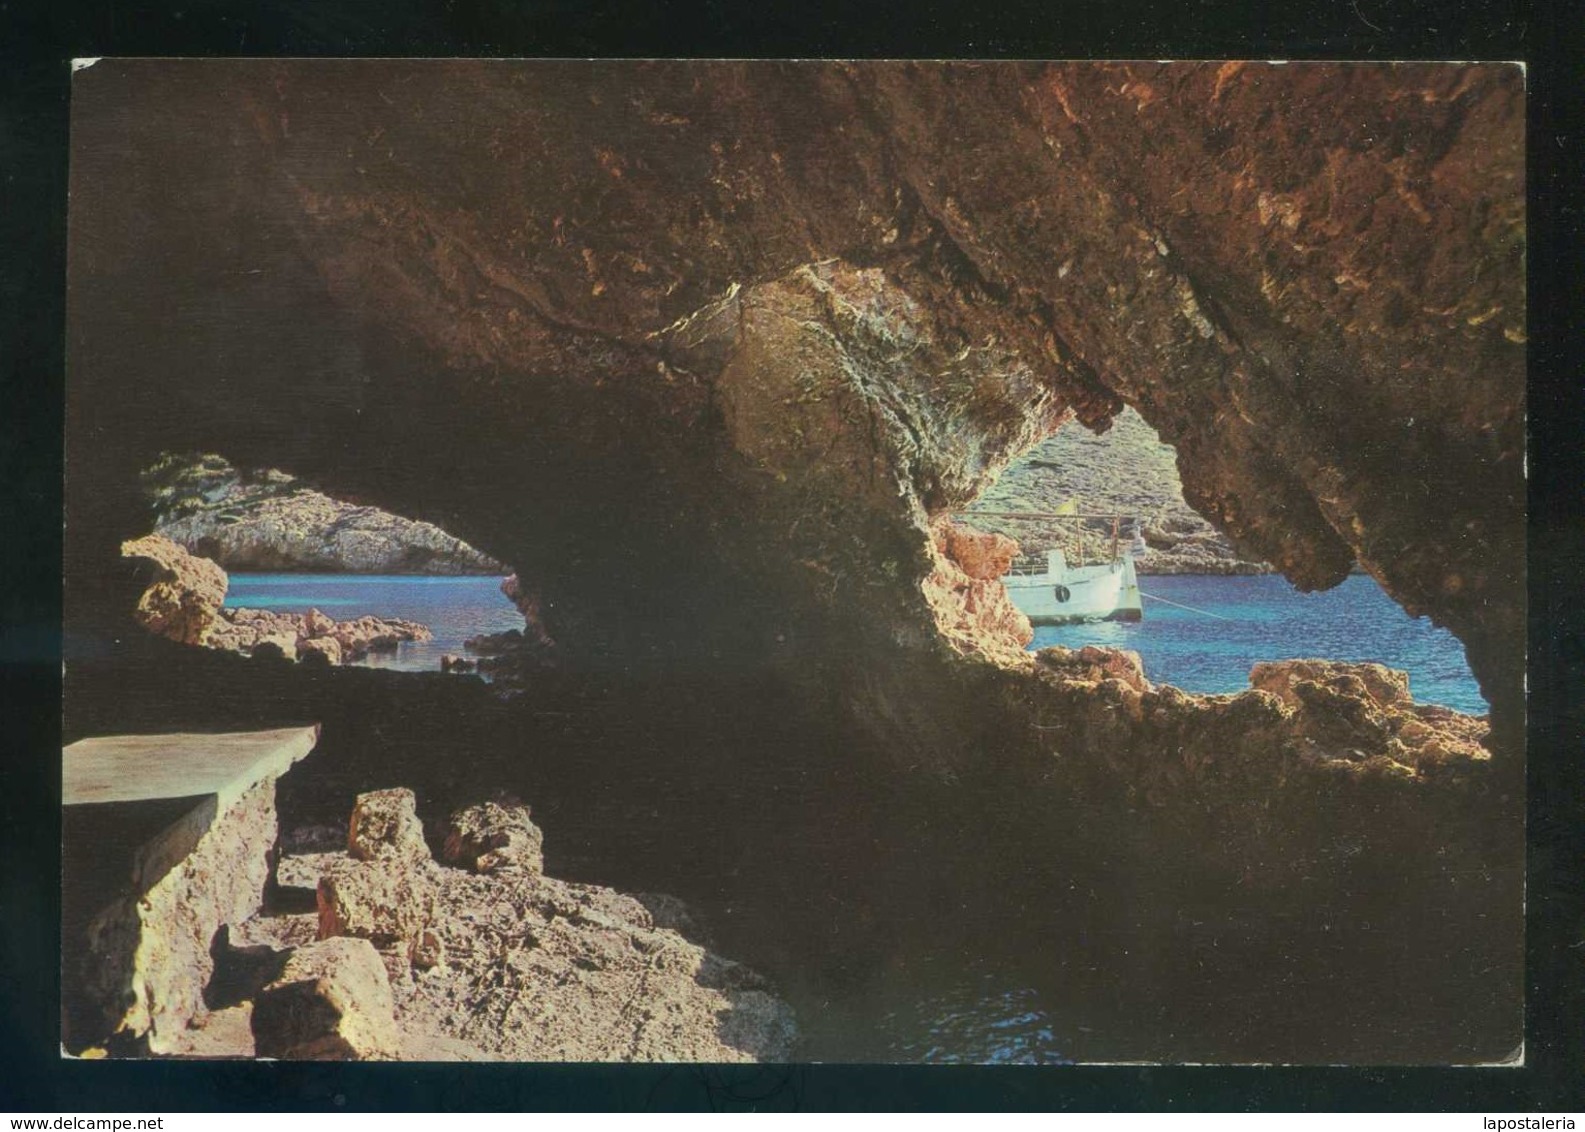 Isla De Cabrera *Cueva De La Cala De Santa María* Ed. Palma Nº 2434. Circulada 1967. - Cabrera